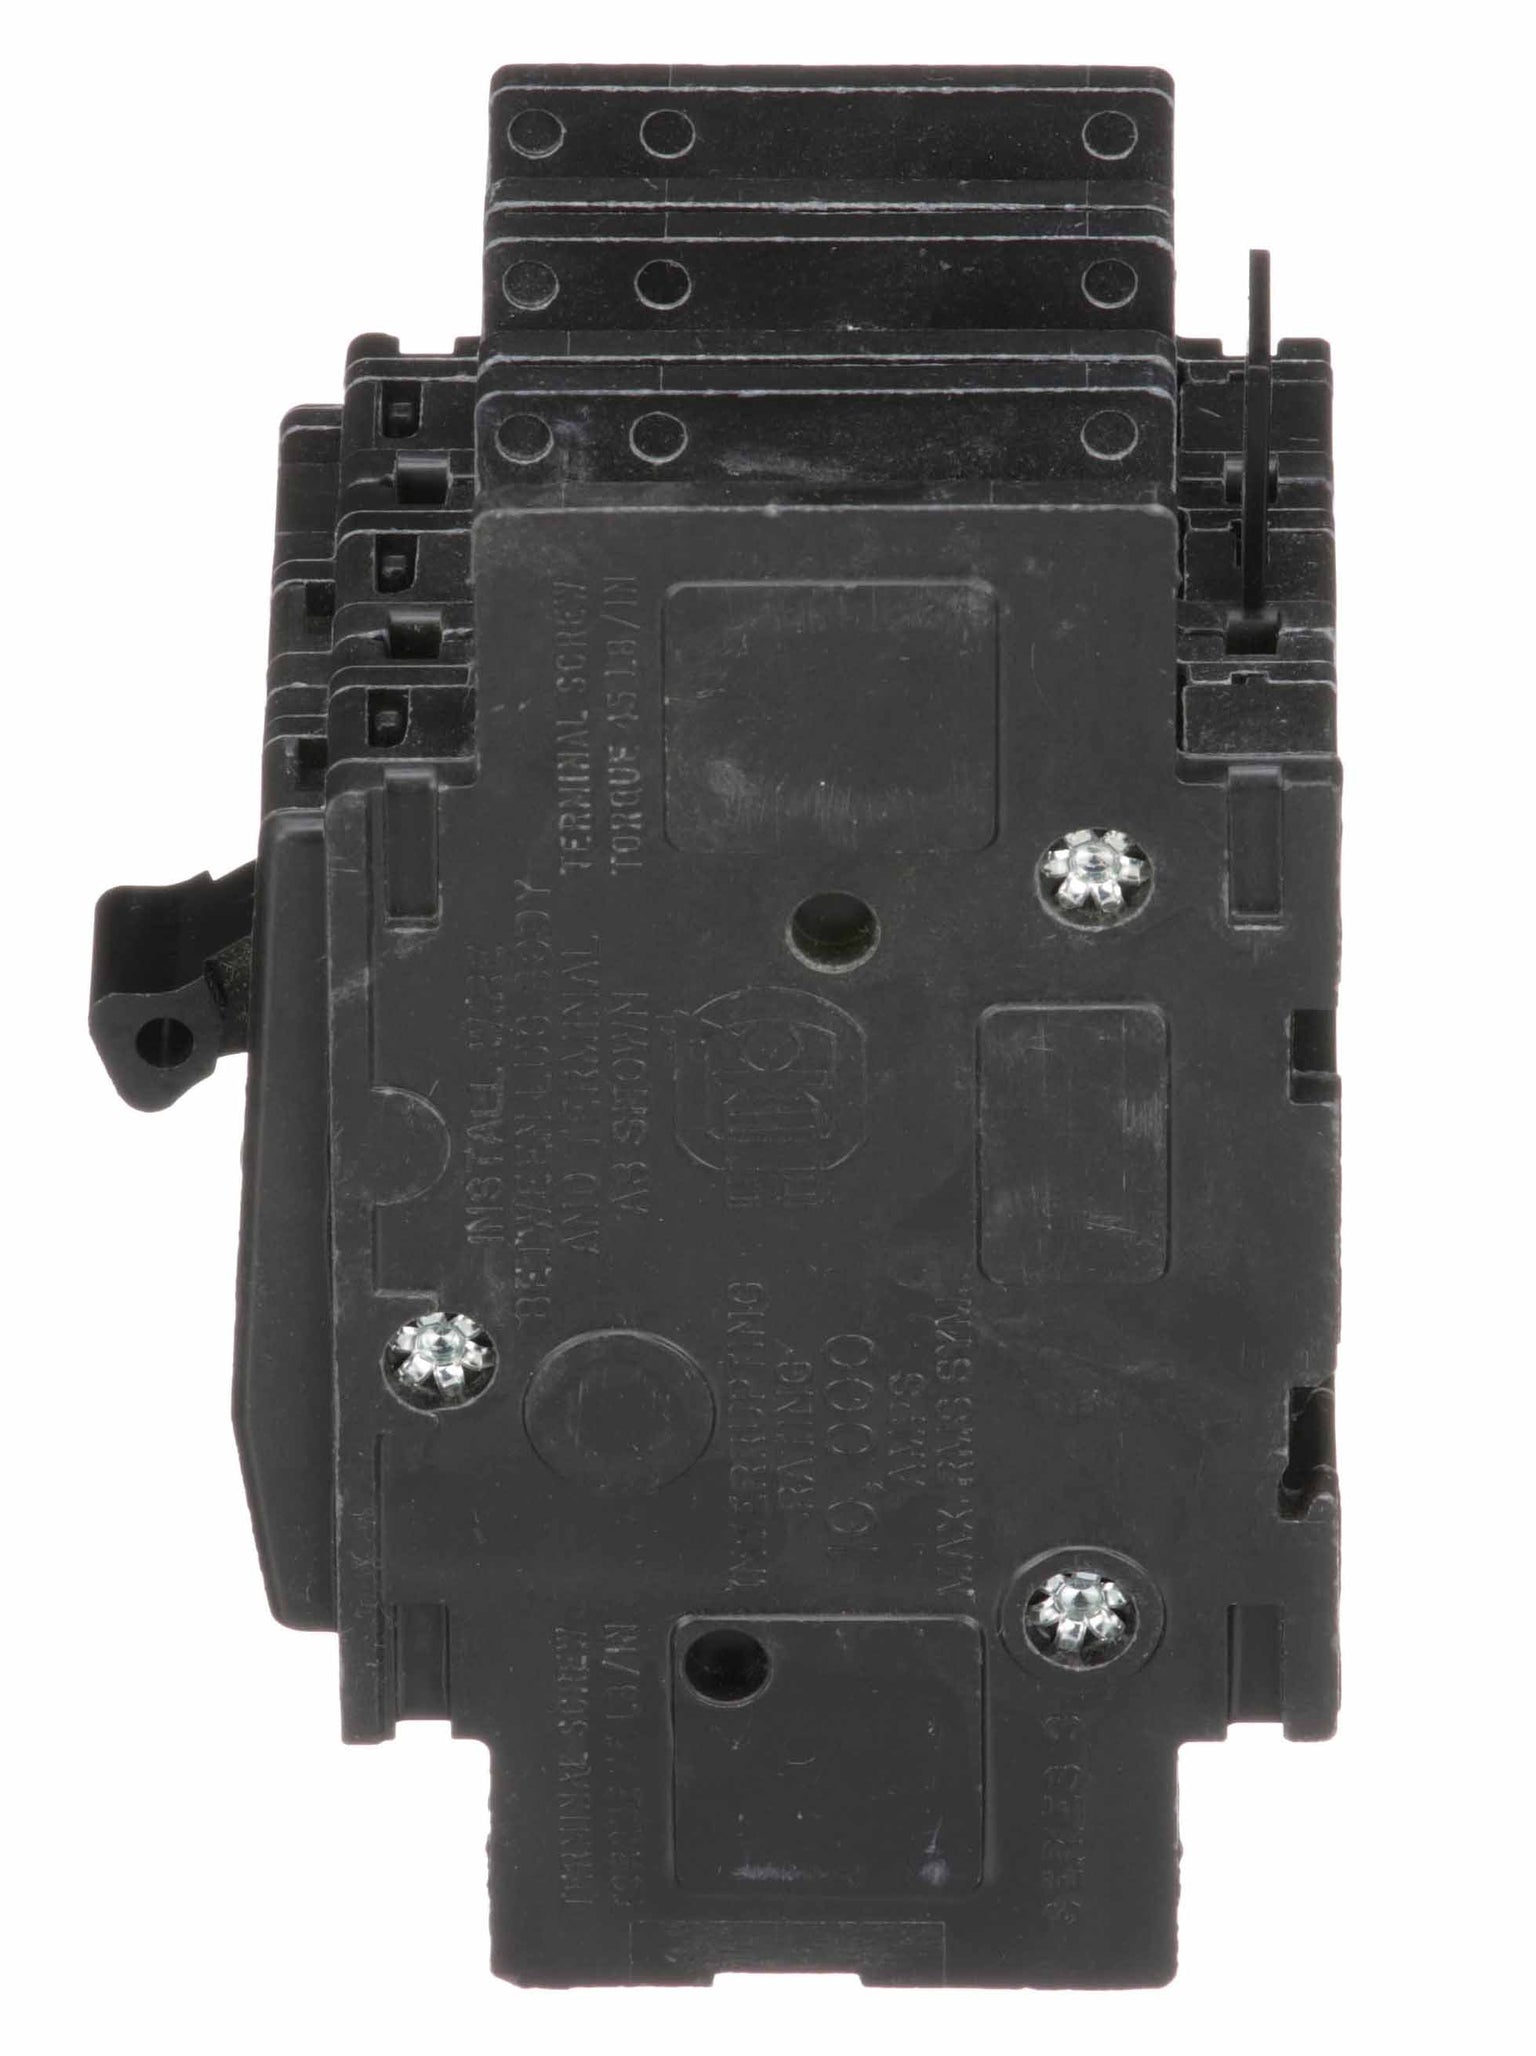 QOU325 - Square D - 25 Amp Circuit Breaker